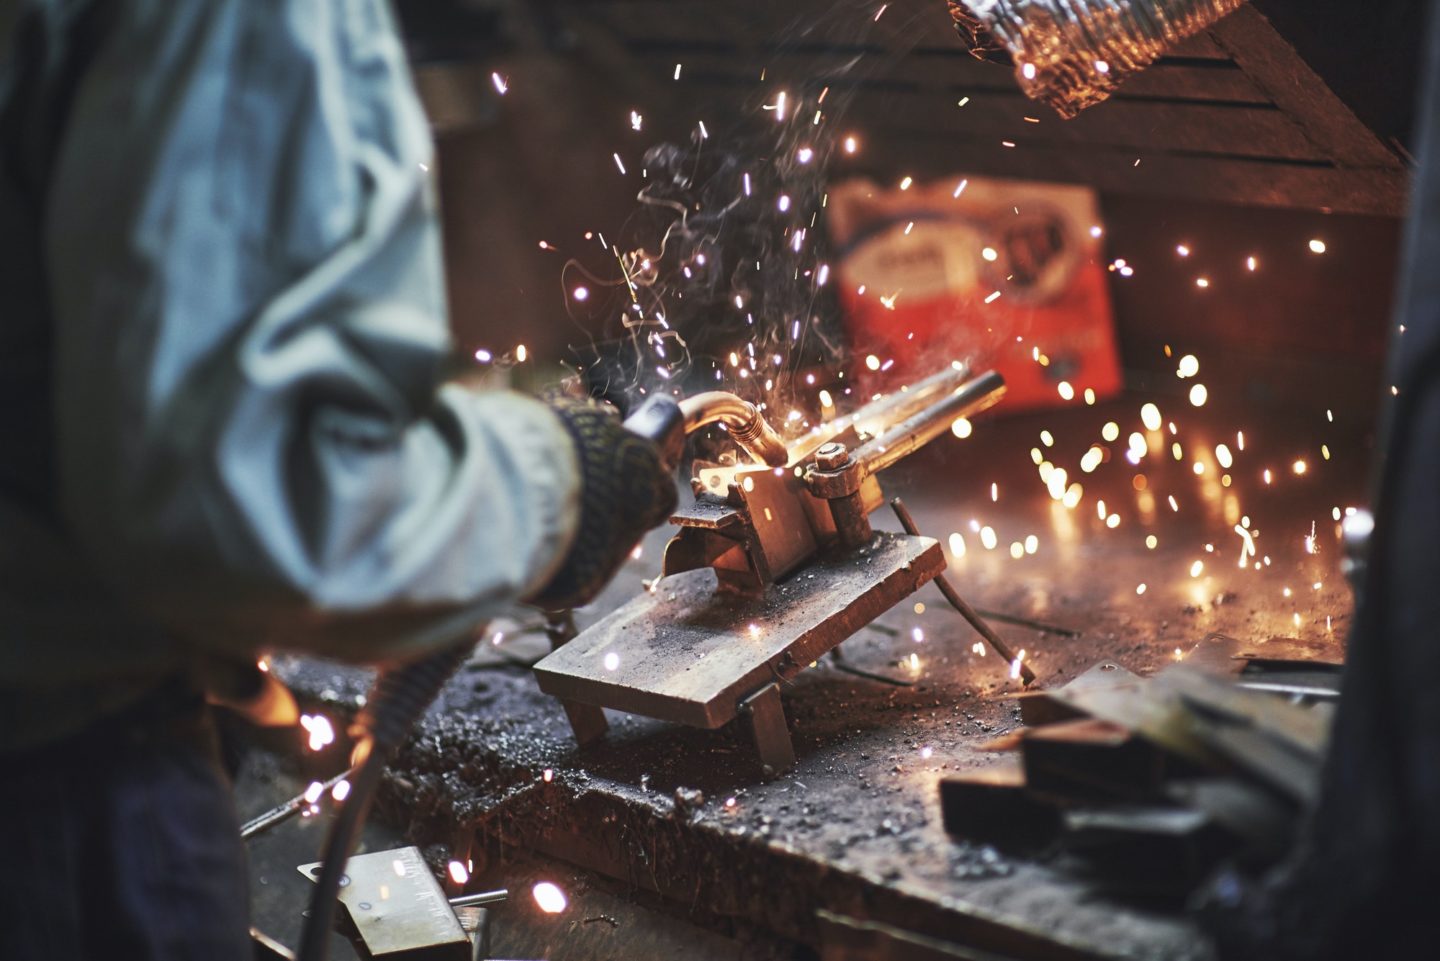 Industrial factory weld worker. Welding or welder master weld the steel